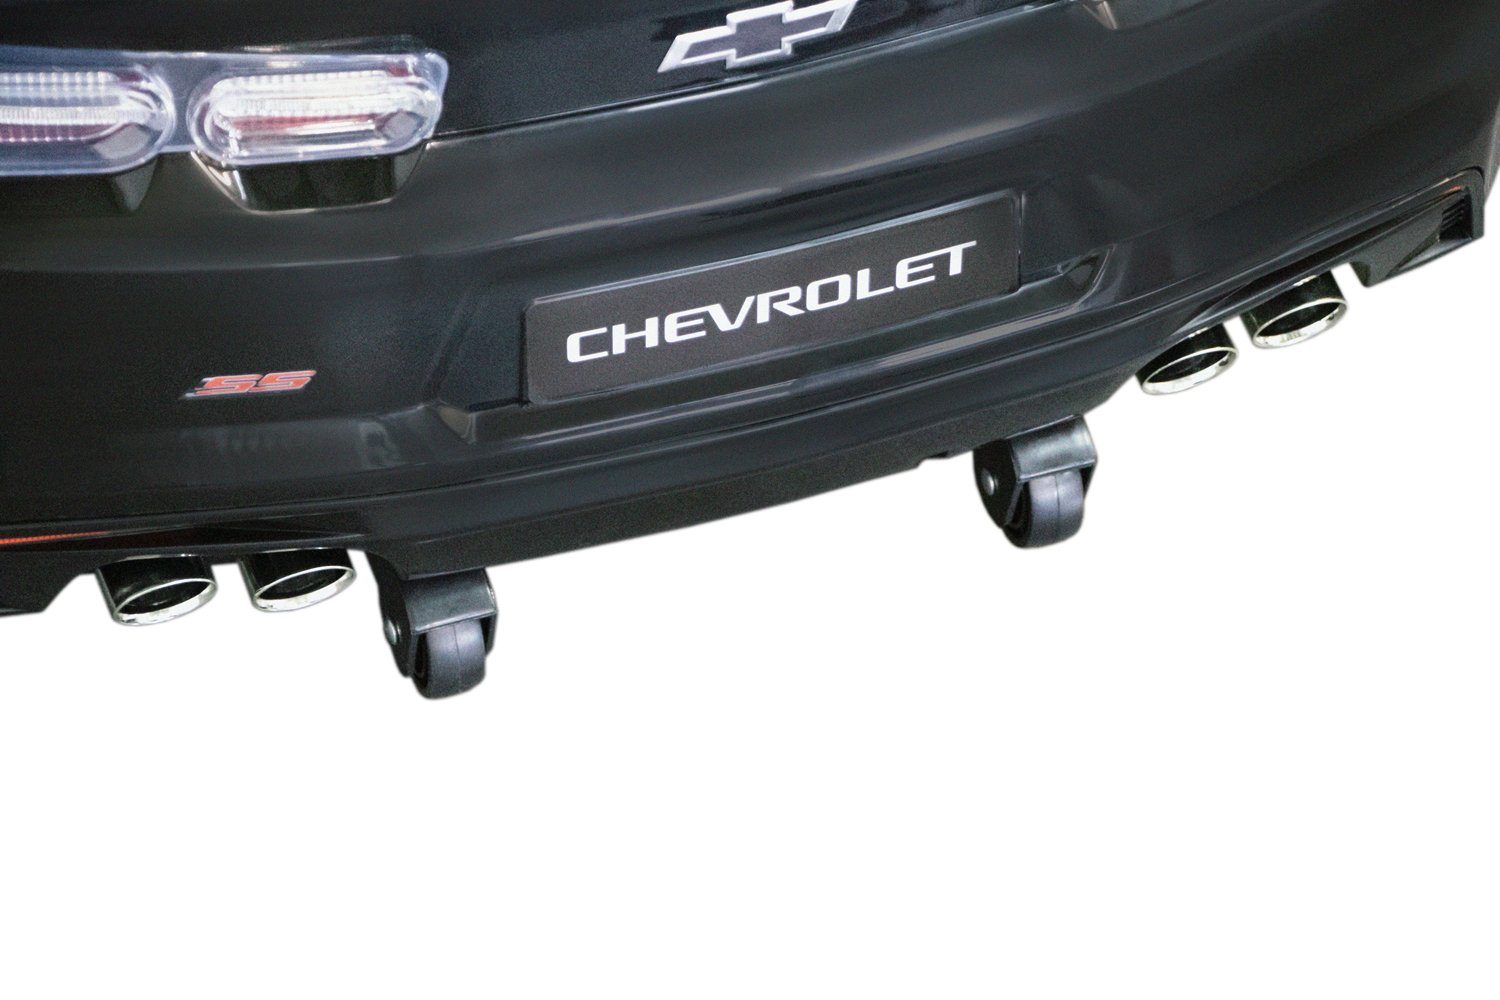 Elektro Chevrolet 2x Elektro-Kinderauto Kinderauto 2SS Lizenz Schwarz 35W Kidix Camaro Kinderfahrzeug